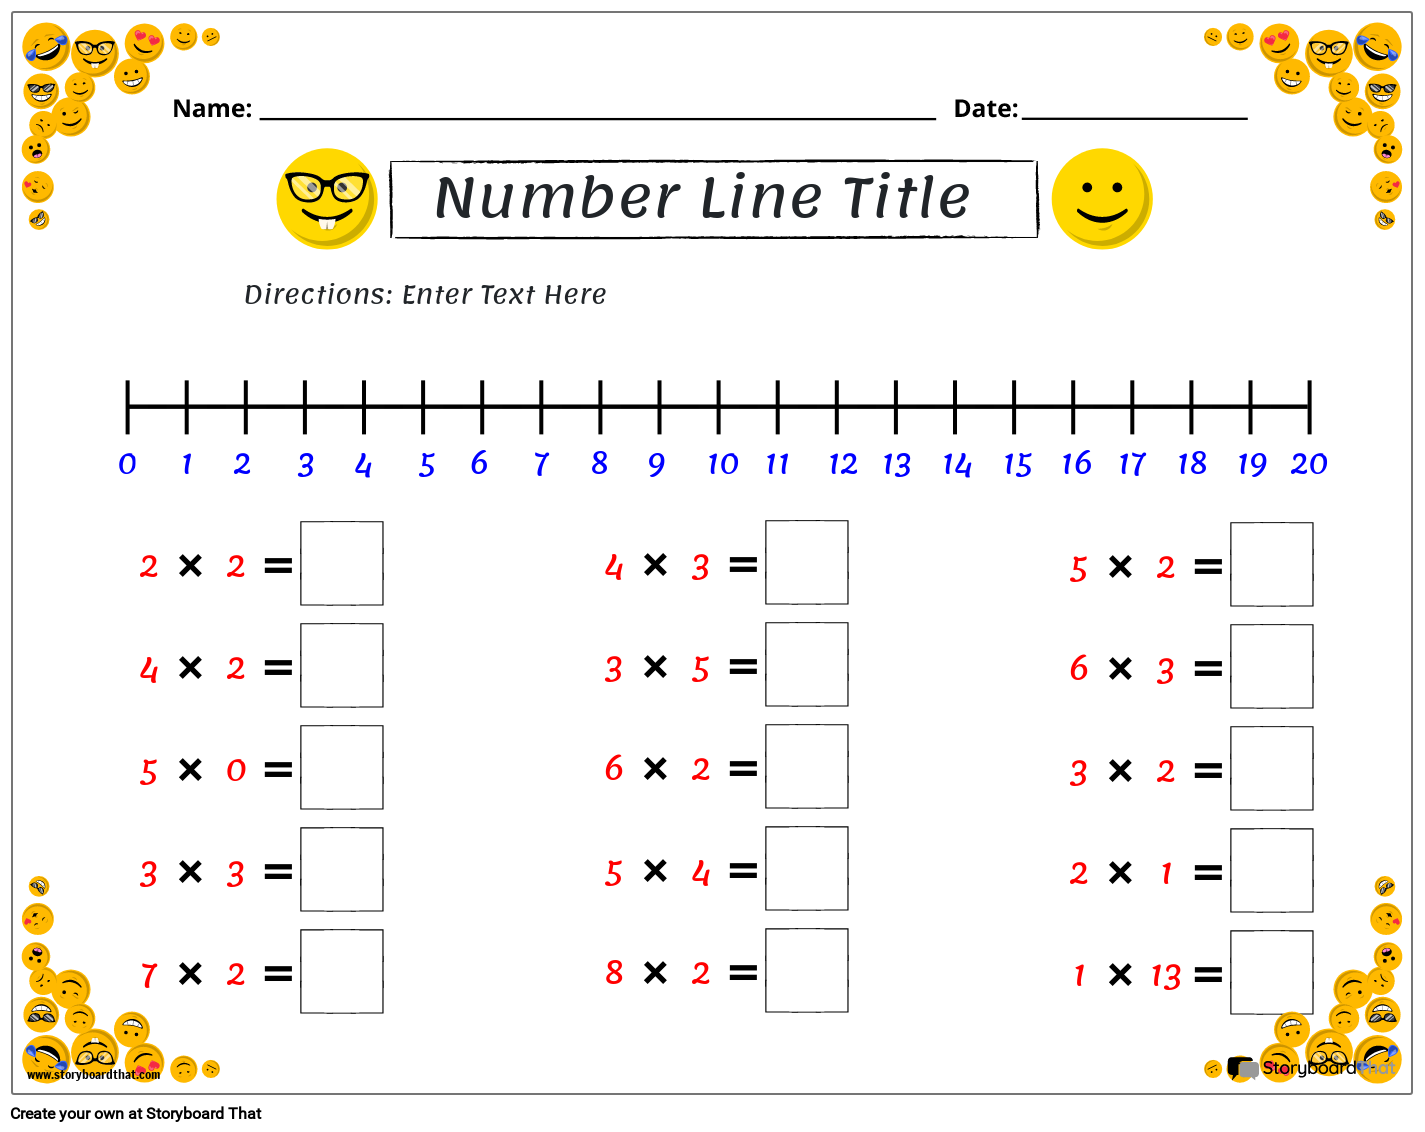 Emoji themed number line worksheet